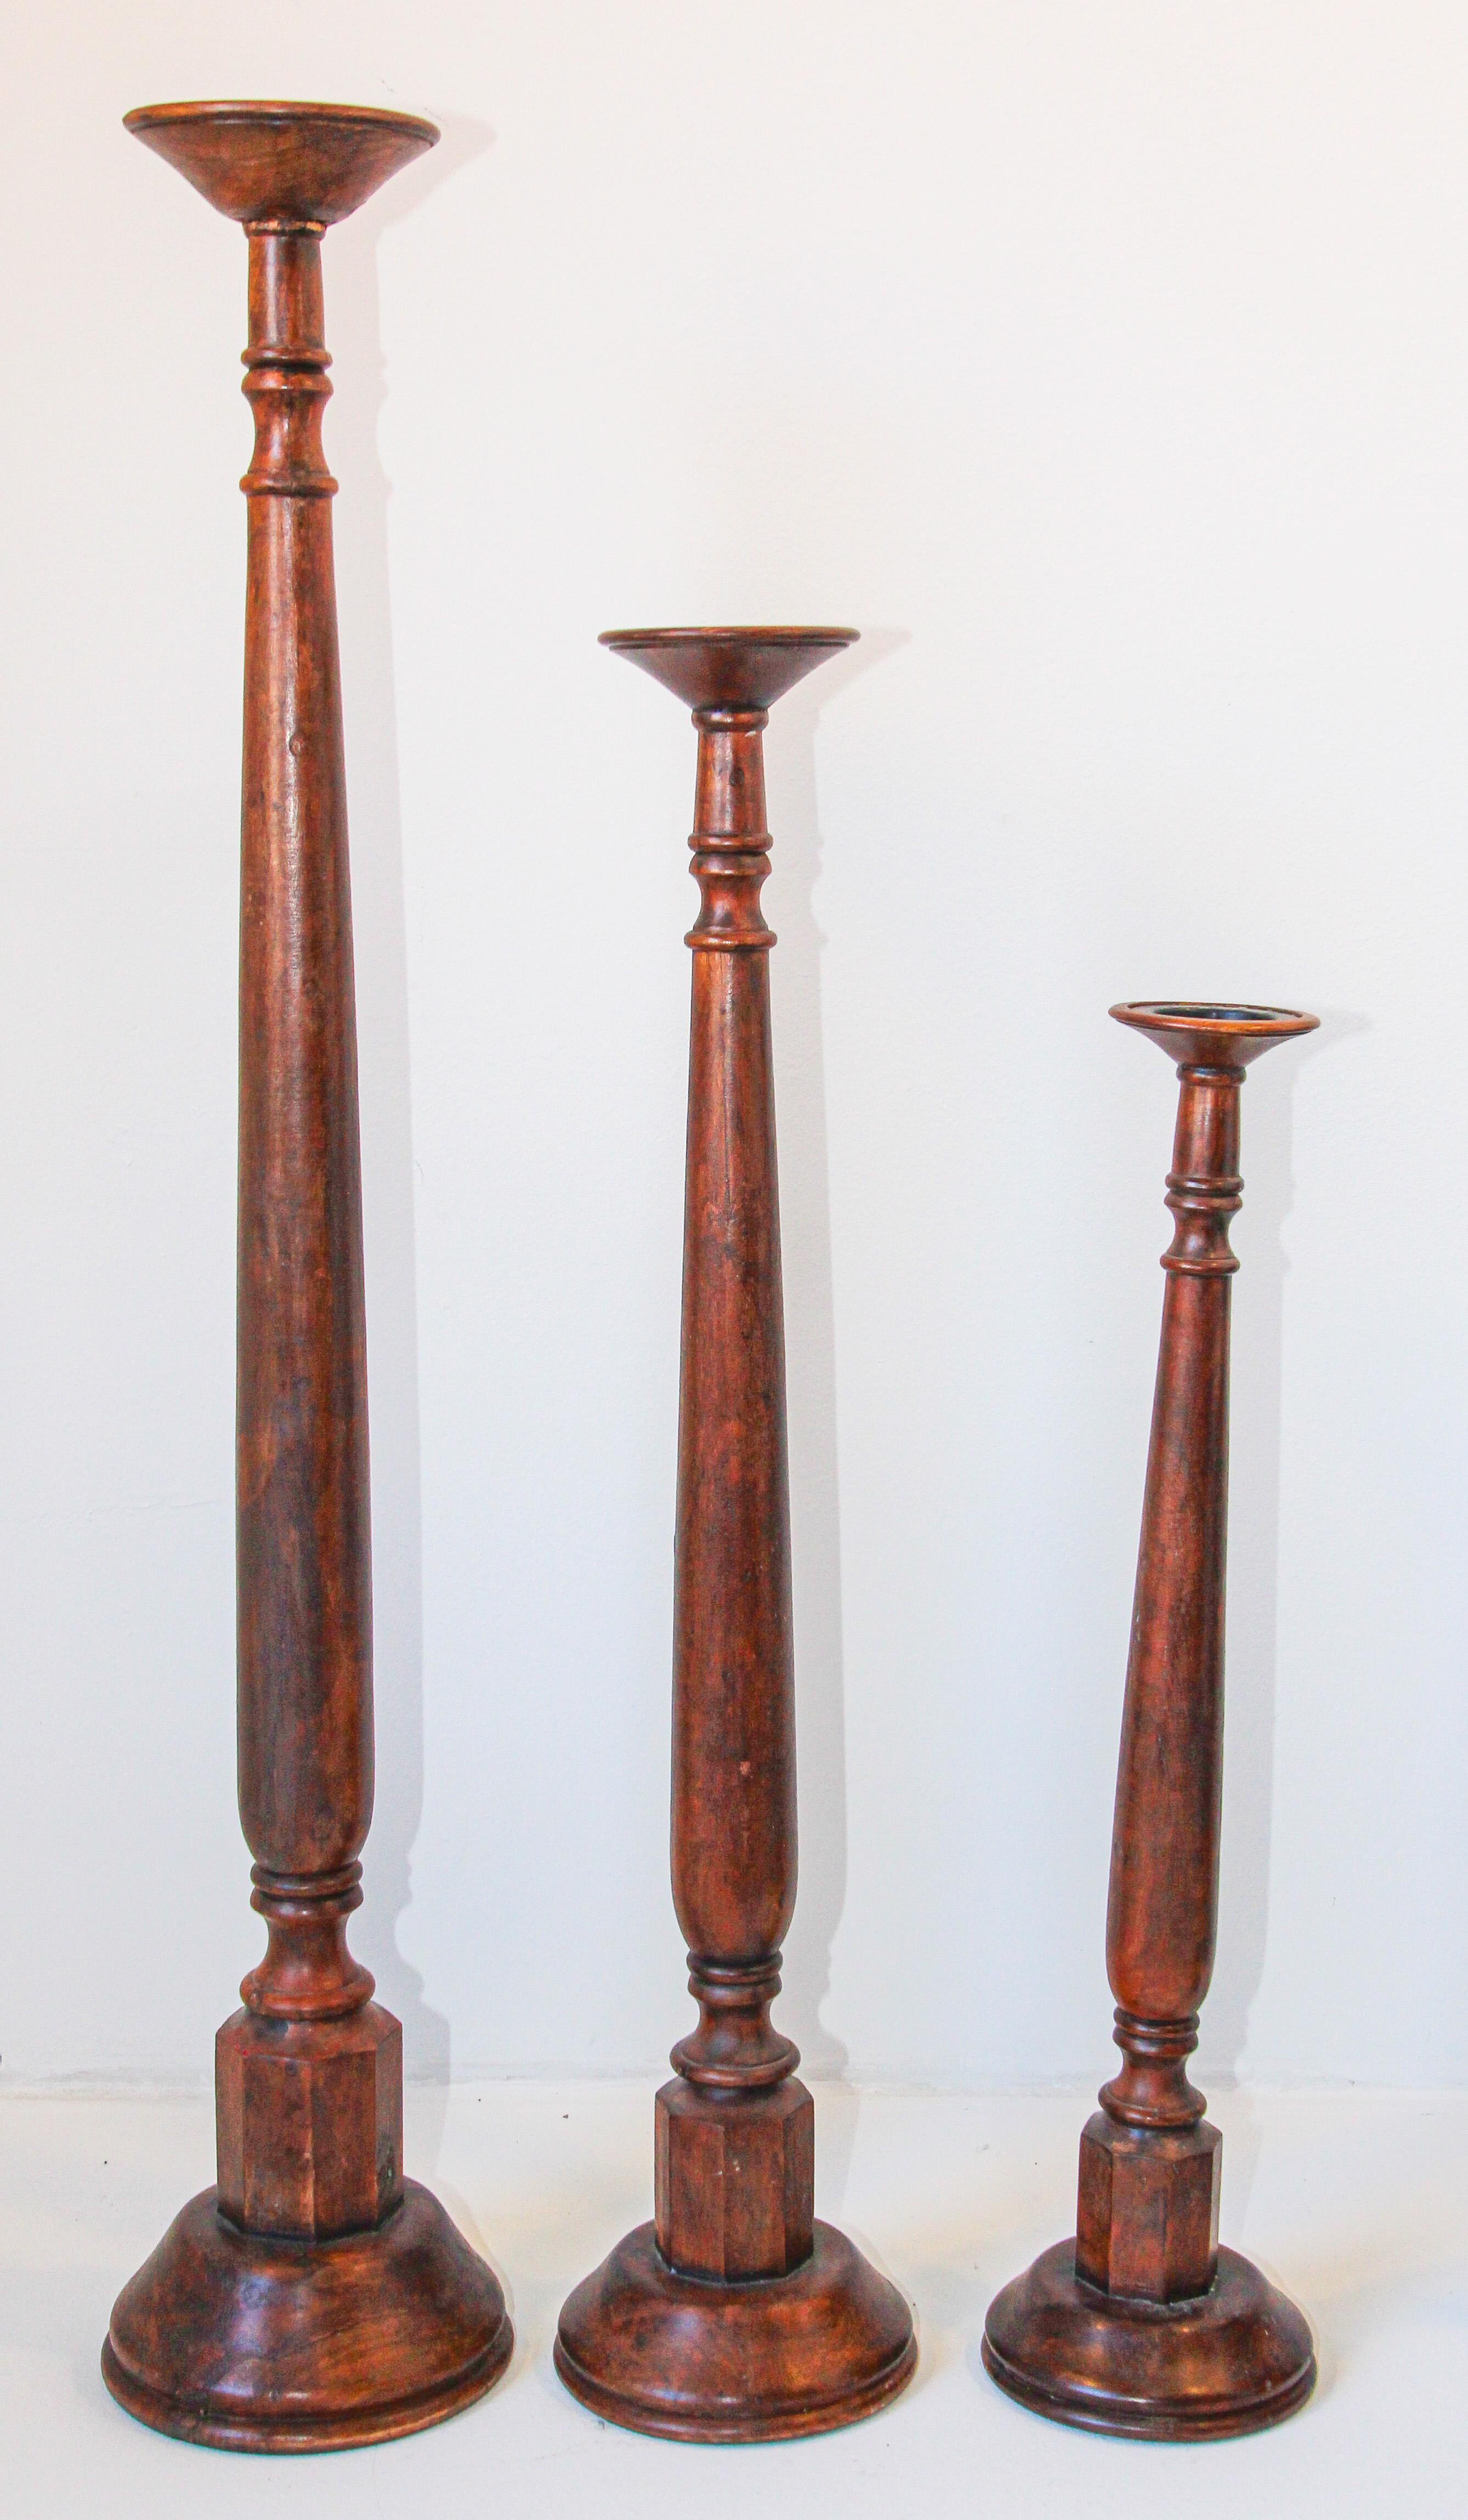 Jeu de trois porte-bougies piliers en bois de teck de tailles différentes.
Elégants chandeliers sculpturaux en bois tourné de style espagnol rustique sur des bases rondes. 
Elégant bougeoir en bois de teck tourné rustique avec une couleur et une